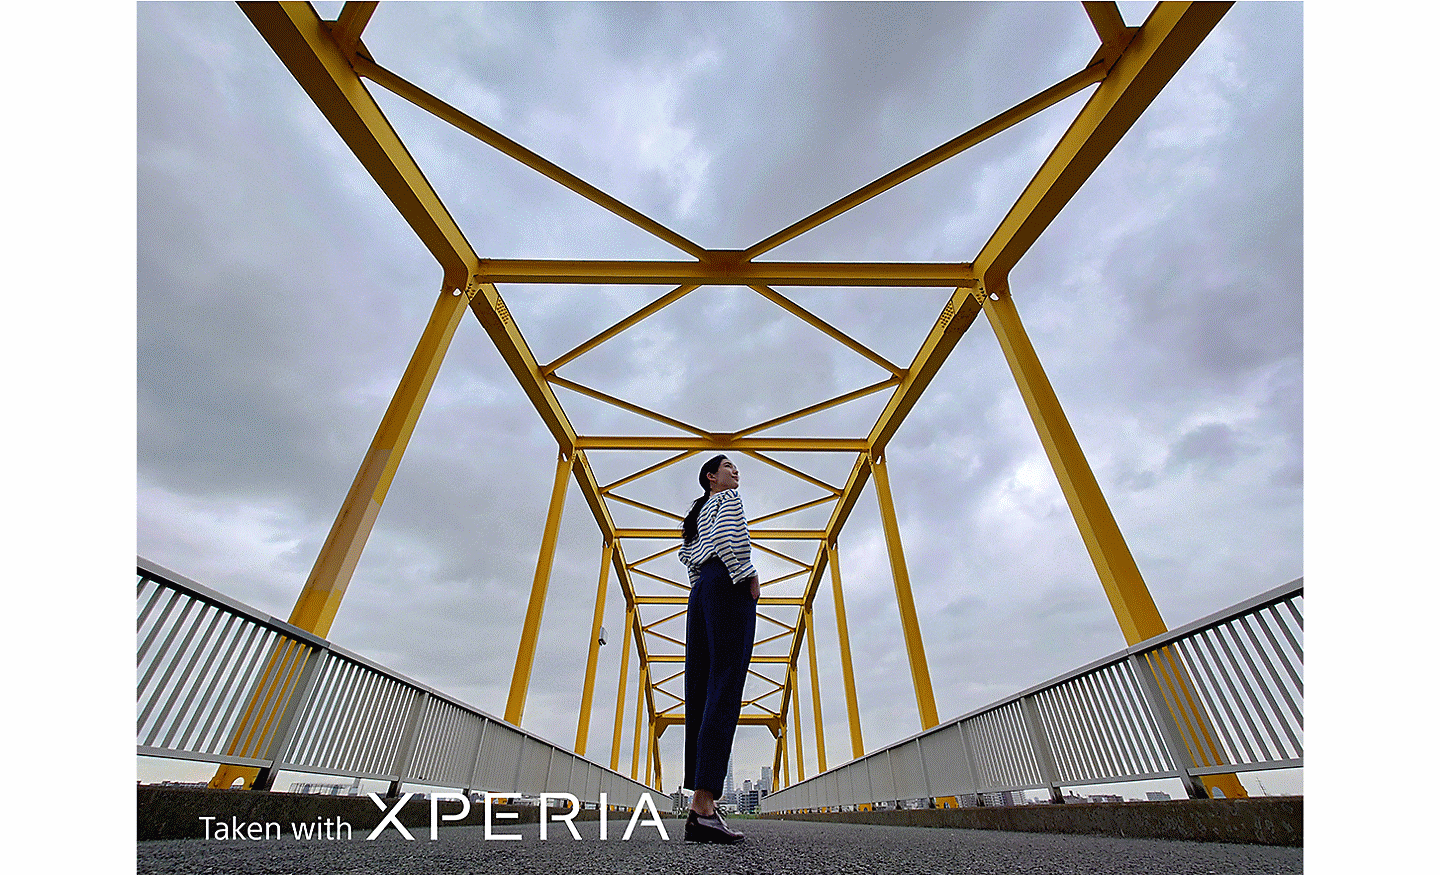 一名女子在金屬橋上擺姿勢拍照的迷人影像。寫著「使用 XPERIA 拍攝」的文字。